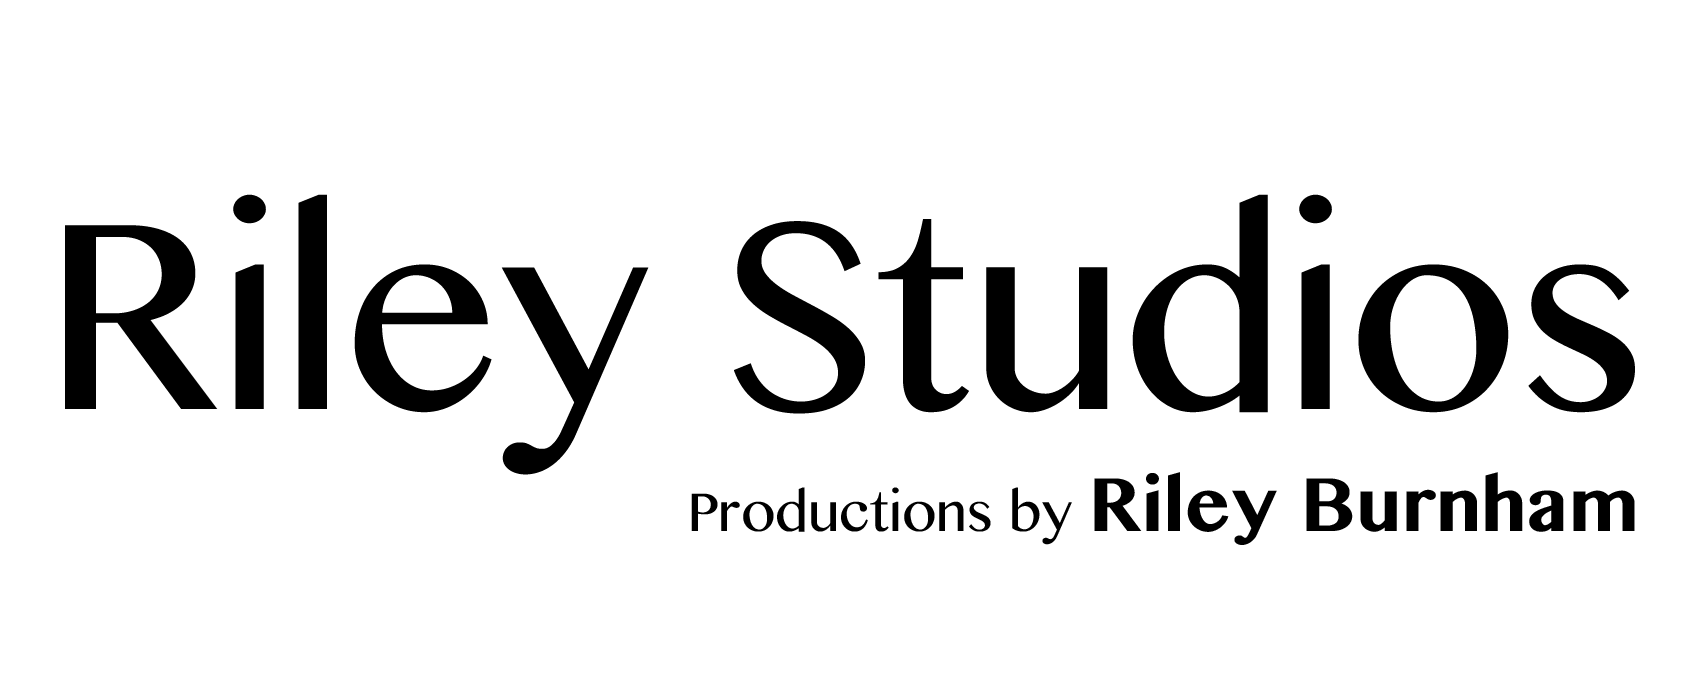 Riley Studios logo